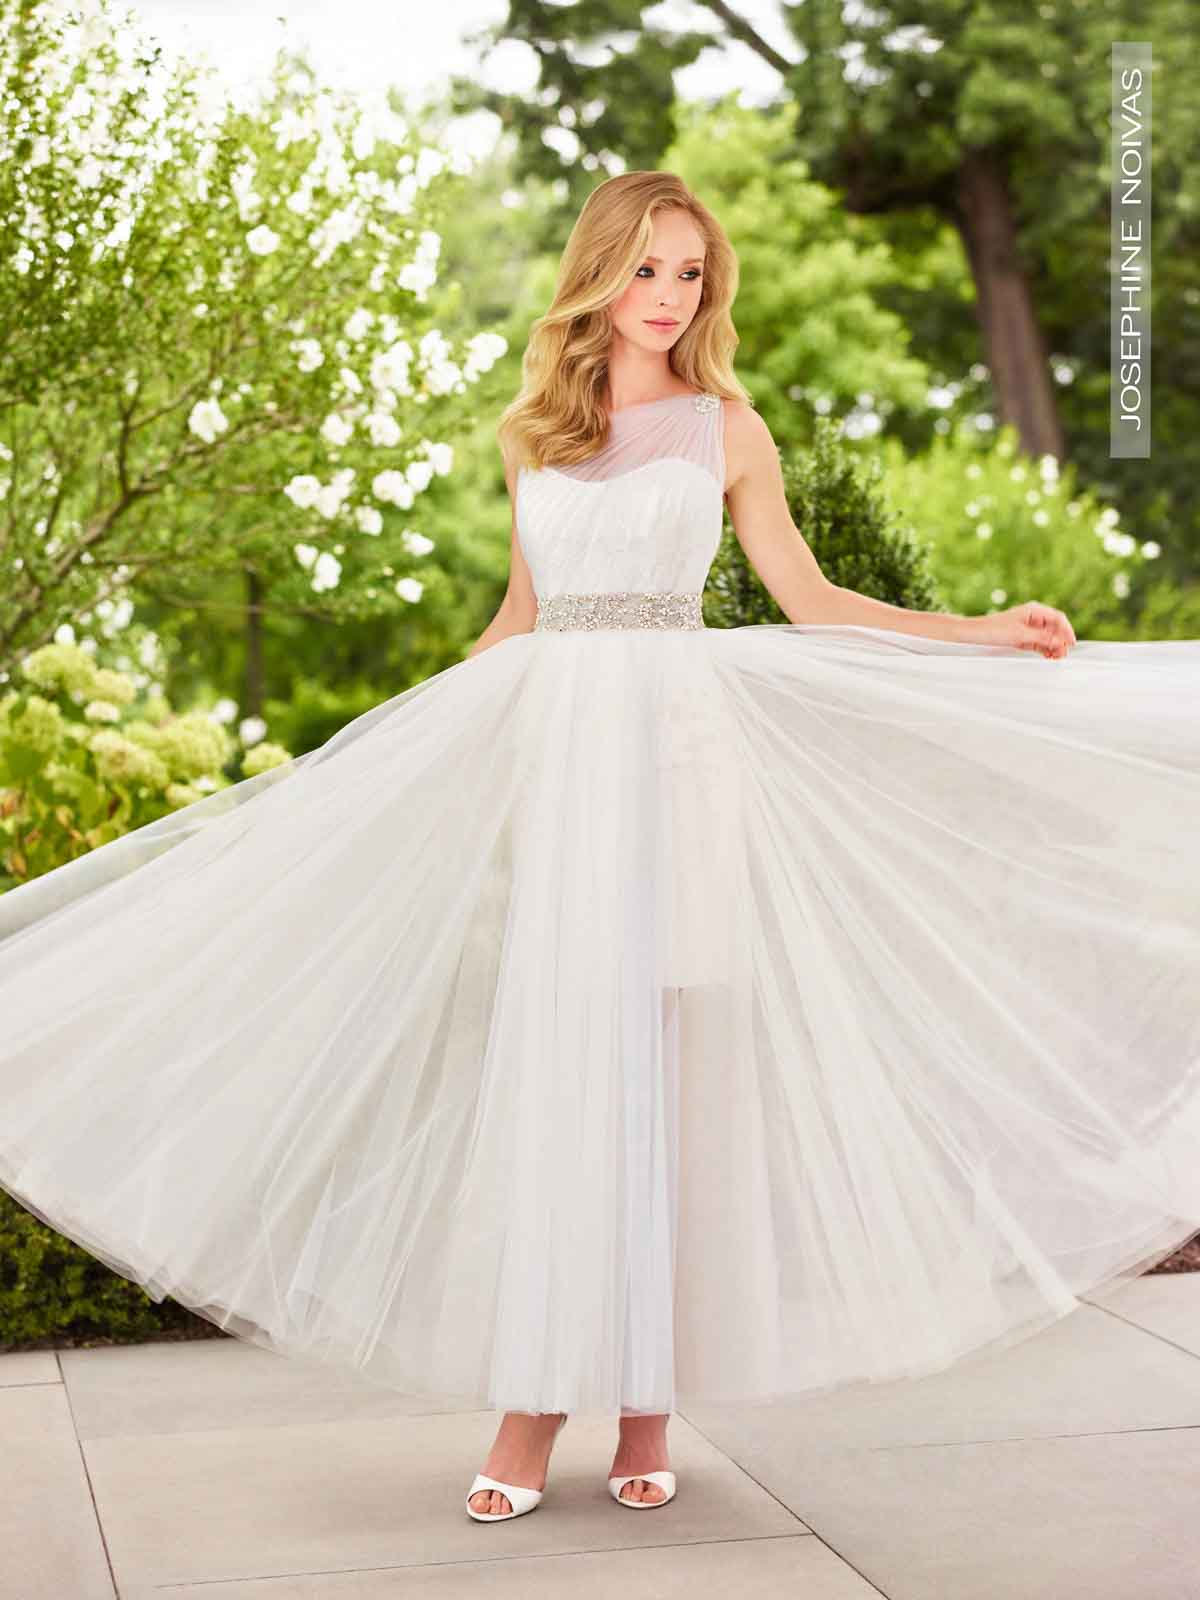 13 lindos vestidos de noiva com tule para noivas princesas - eNoivado